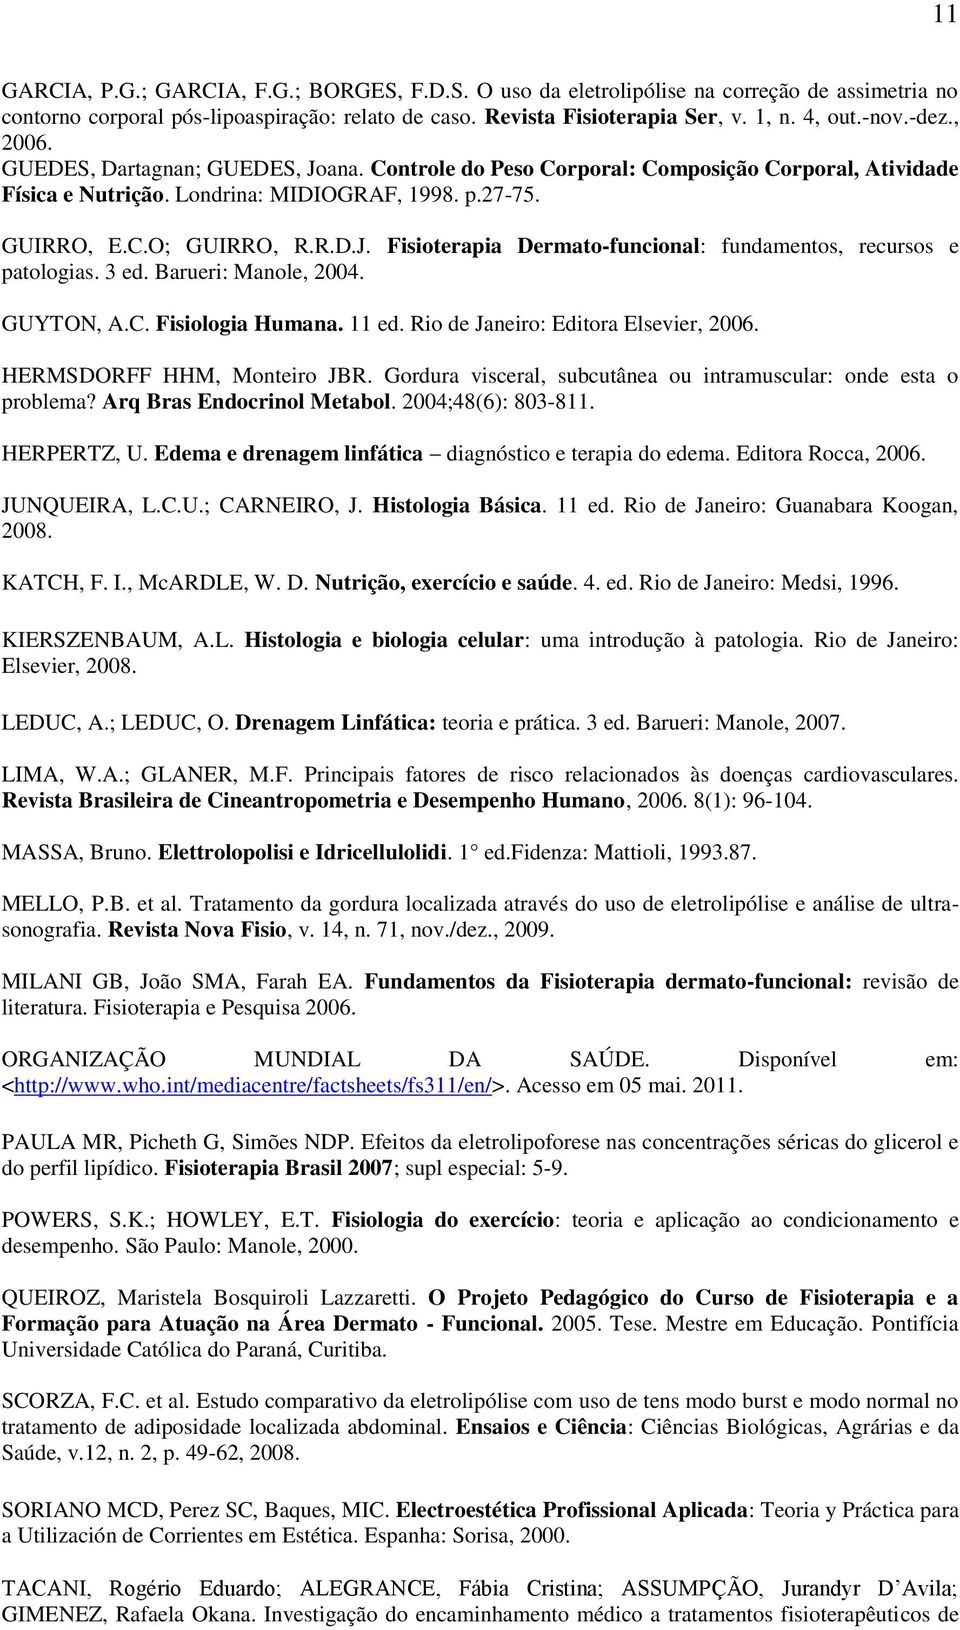 3 ed. Barueri: Manole, 2004. GUYTON, A.C. Fisiologia Humana. 11 ed. Rio de Janeiro: Editora Elsevier, 2006. HERMSDORFF HHM, Monteiro JBR.